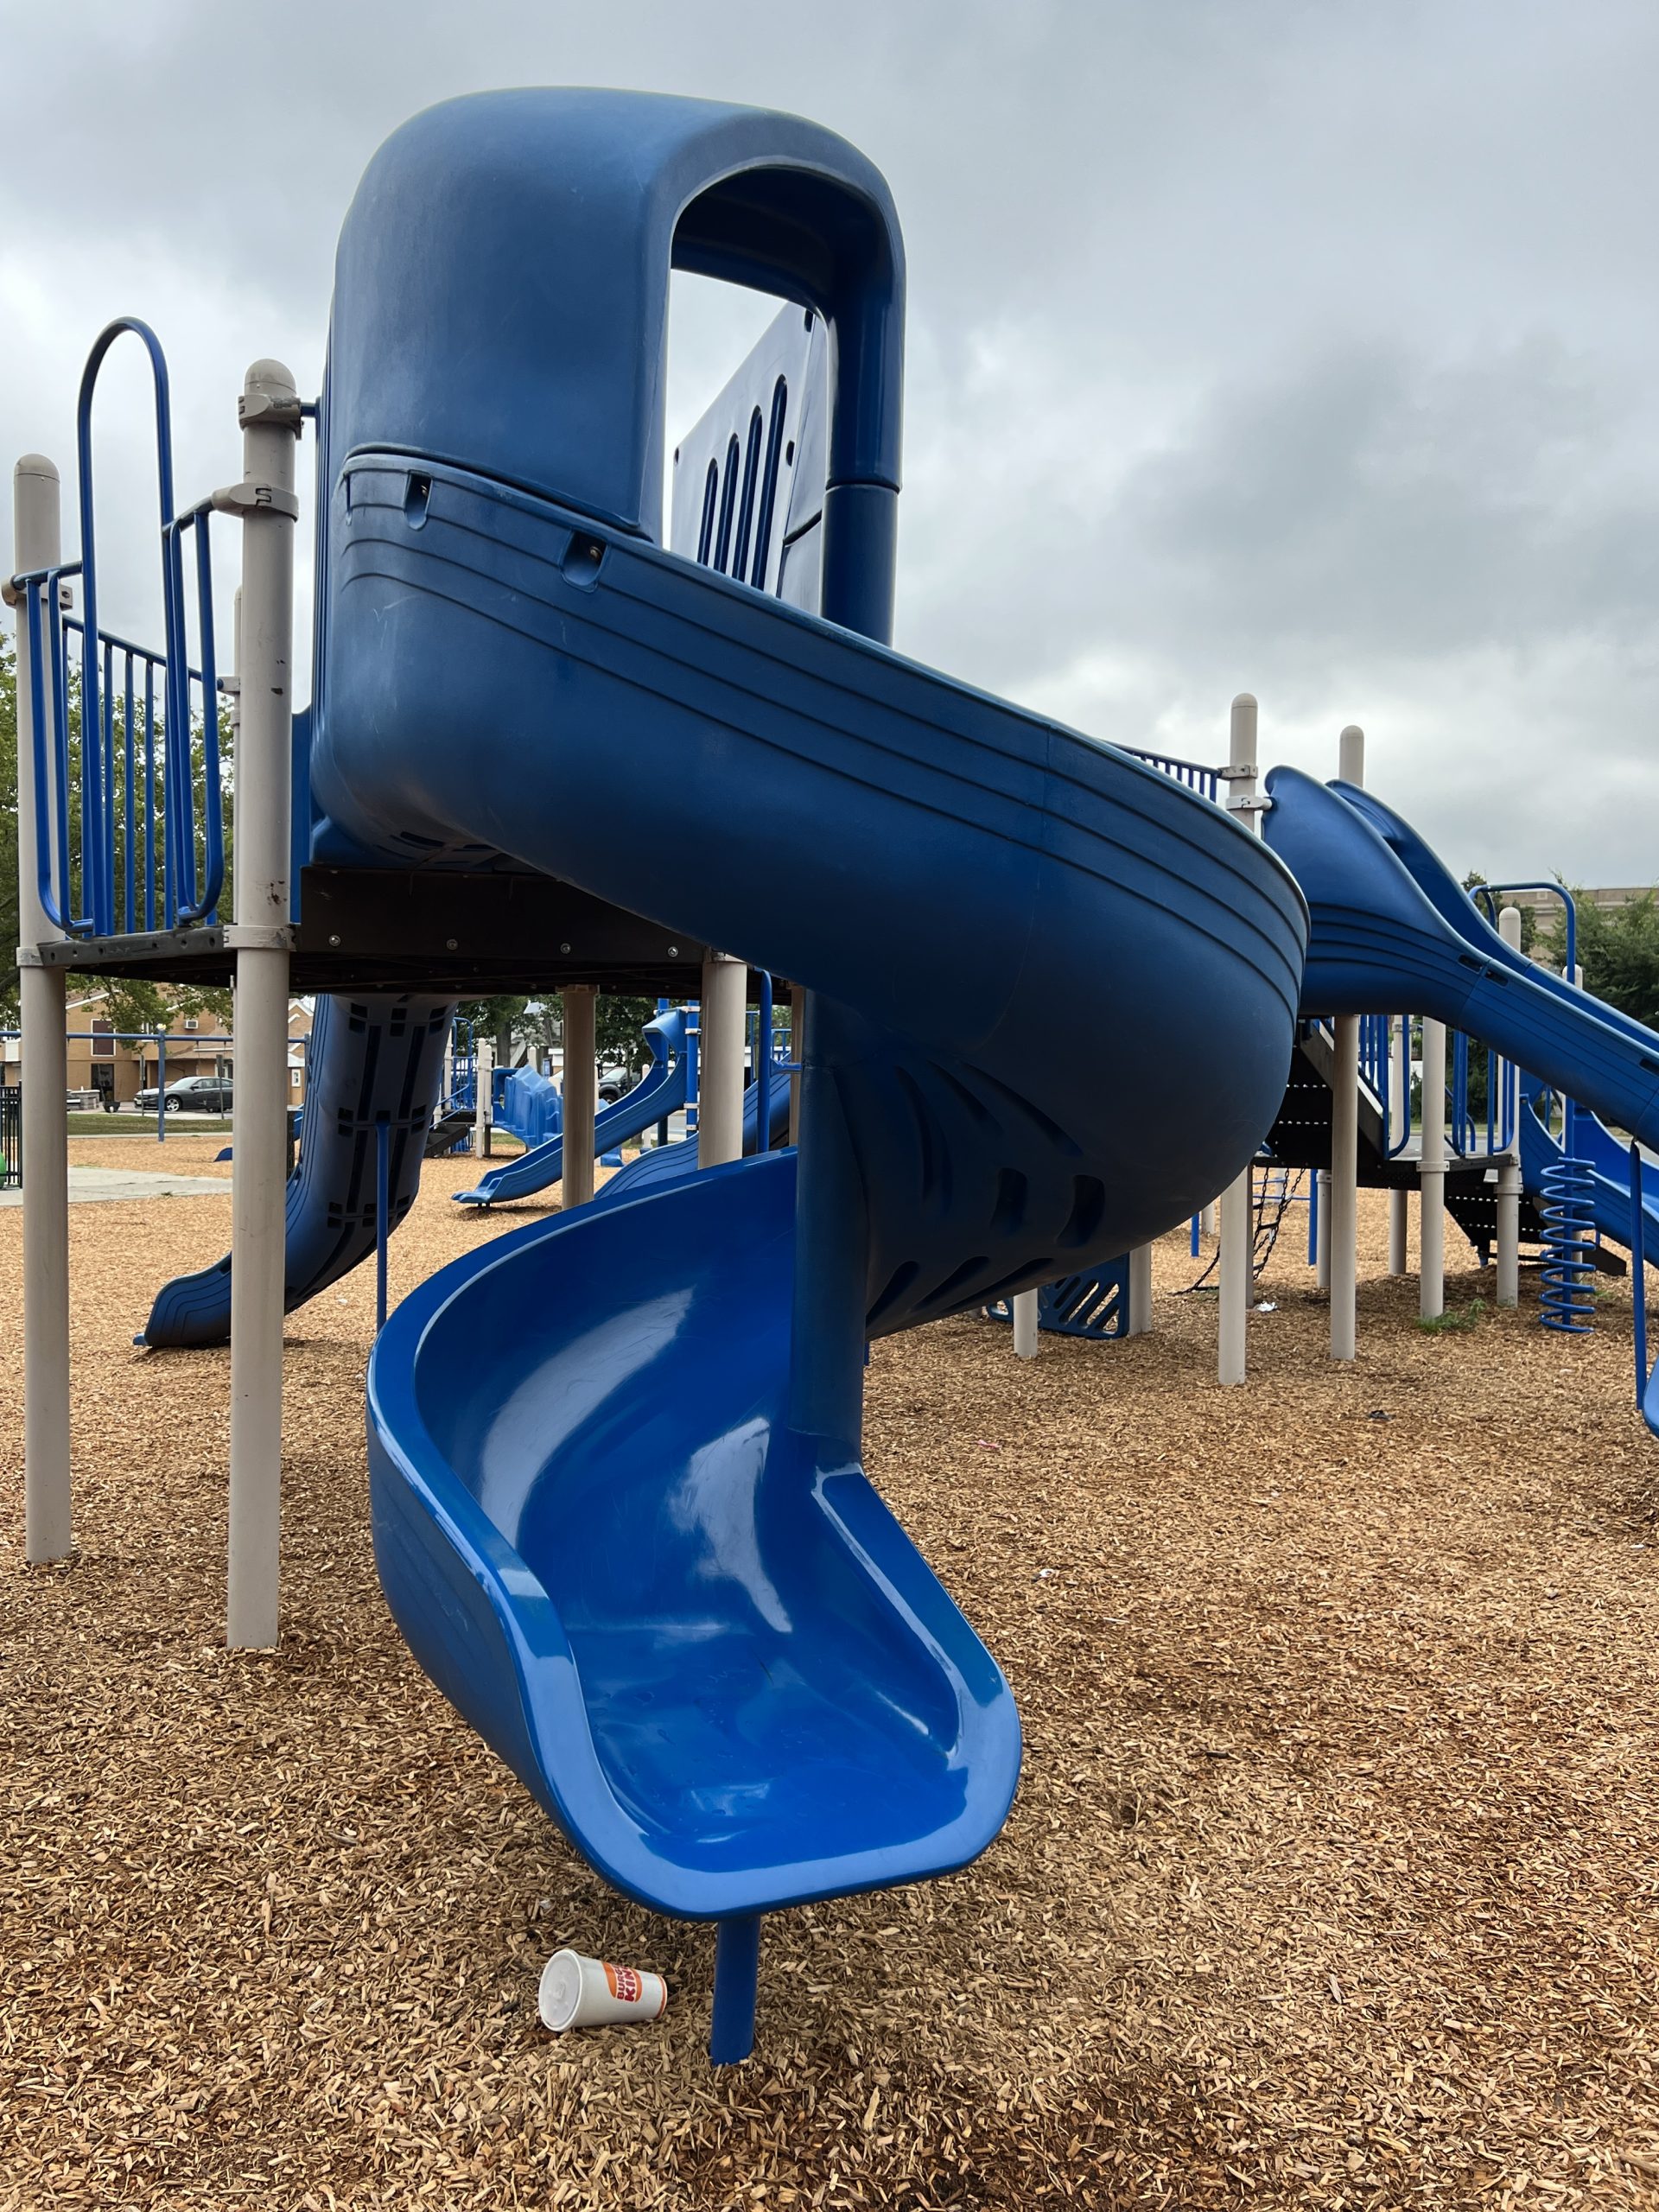 SLIDE twisting slide at Carteret Park Playground in Carteret NJ